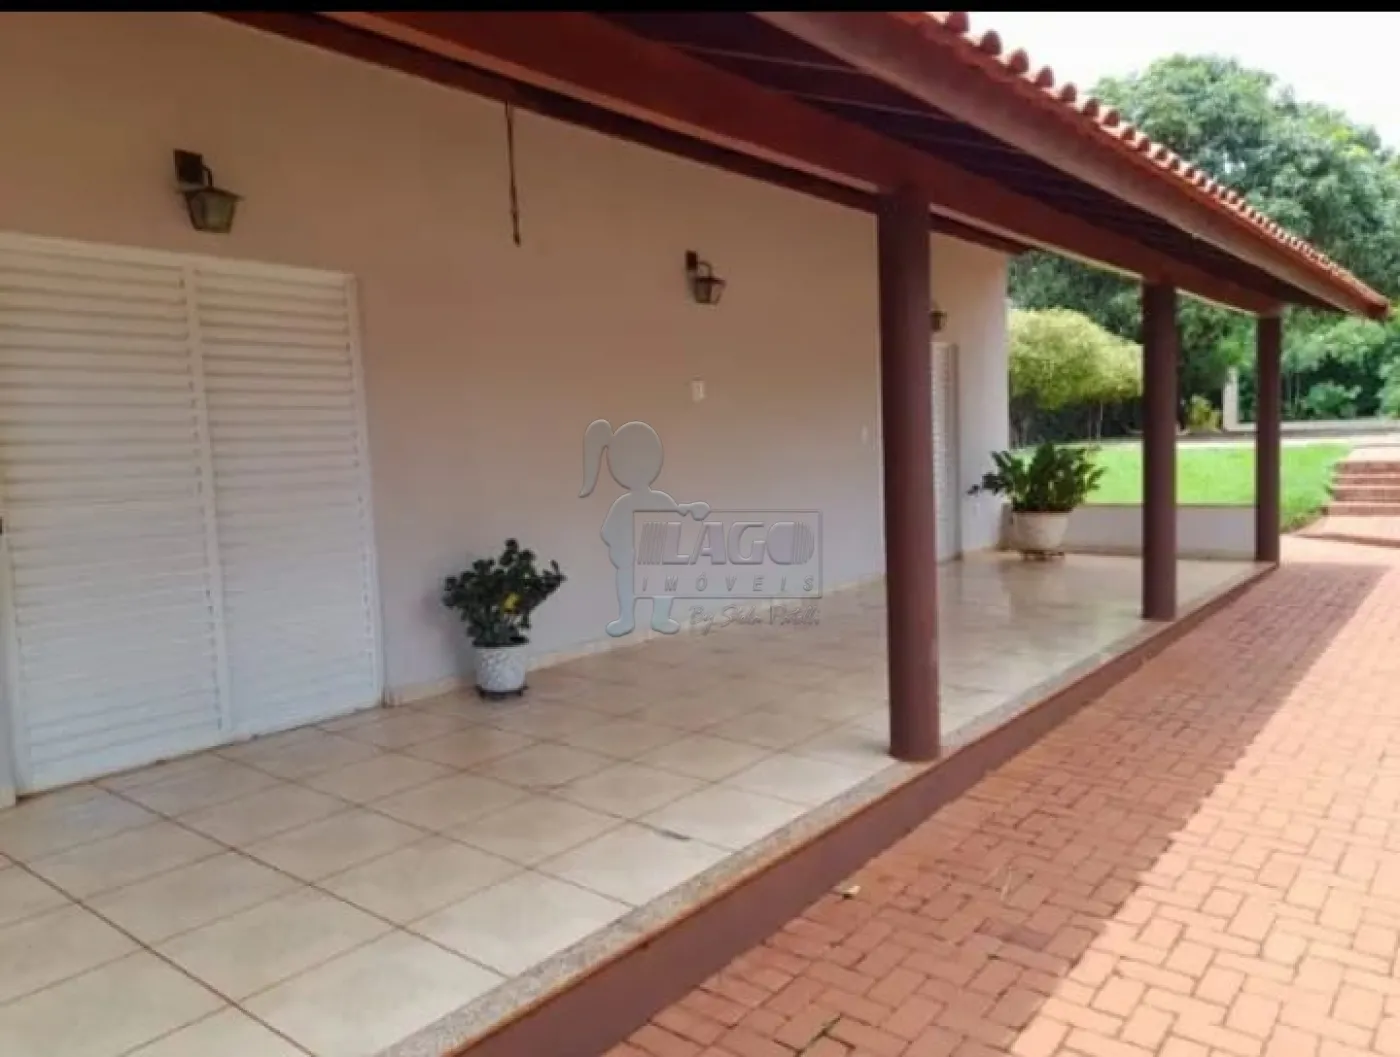 Comprar Casa / Chácara - Rancho em Jardinópolis R$ 940.000,00 - Foto 17